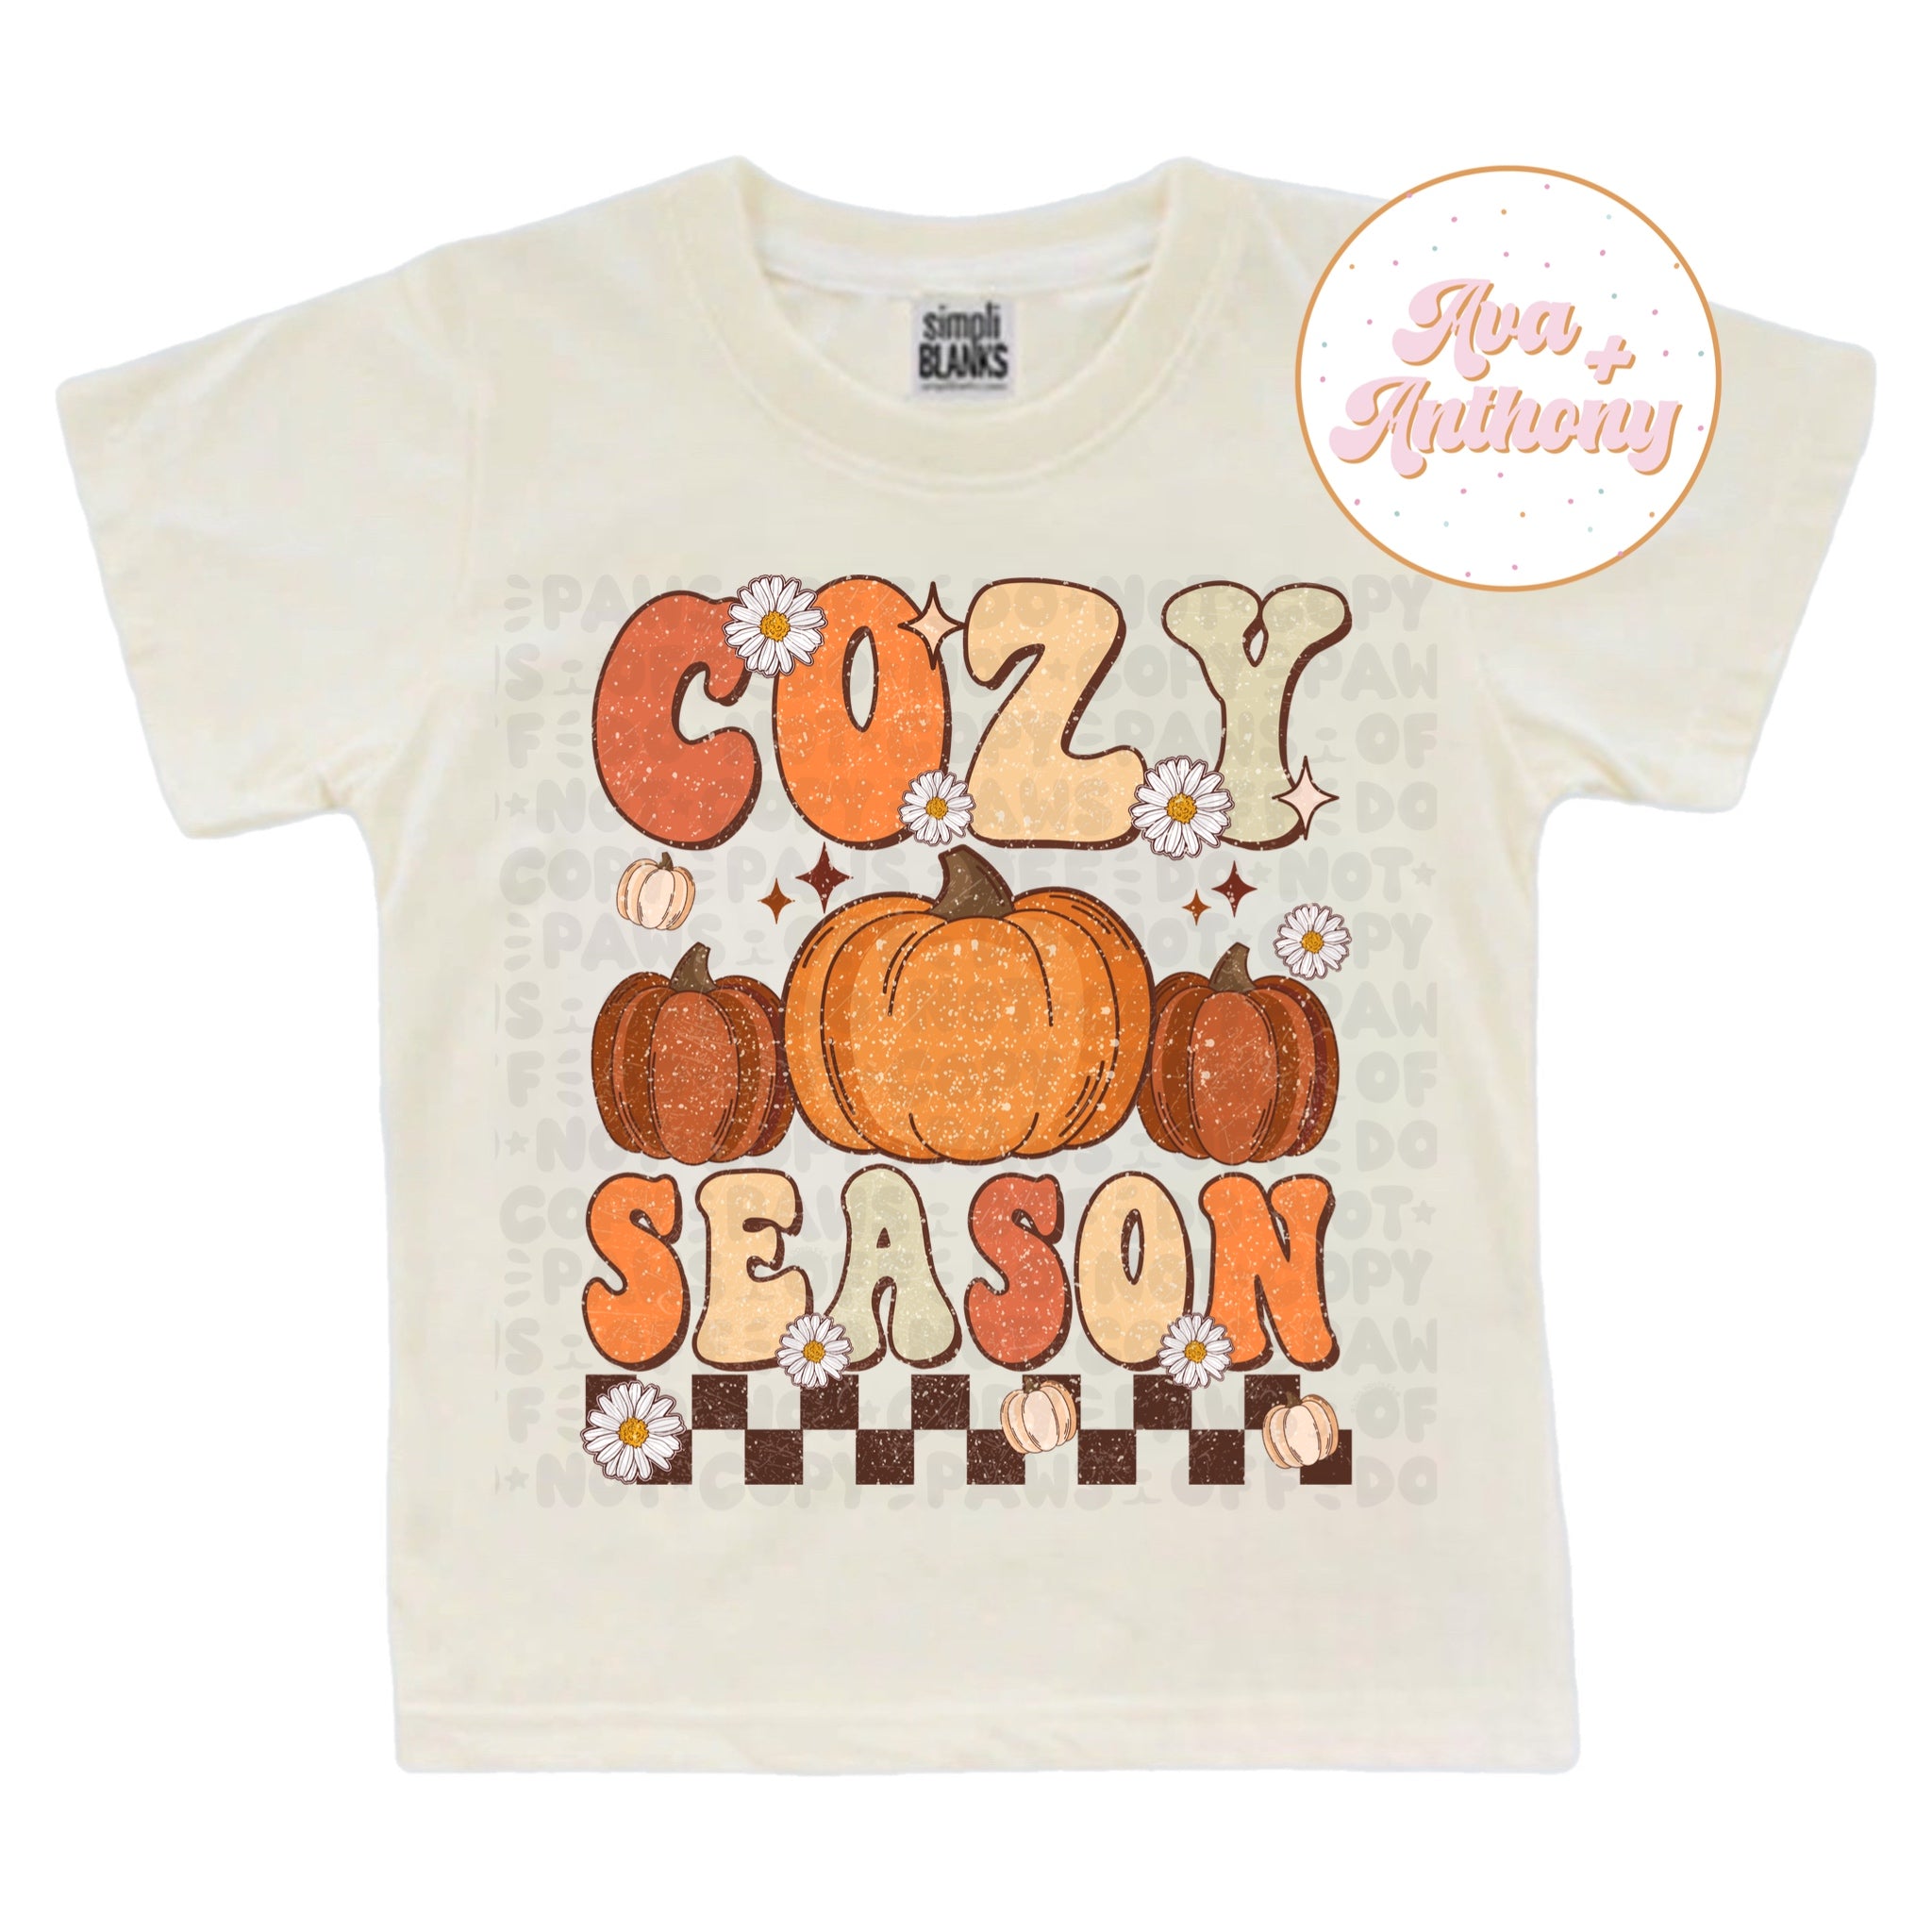 $12 Tuesday Cozy season t-shirt